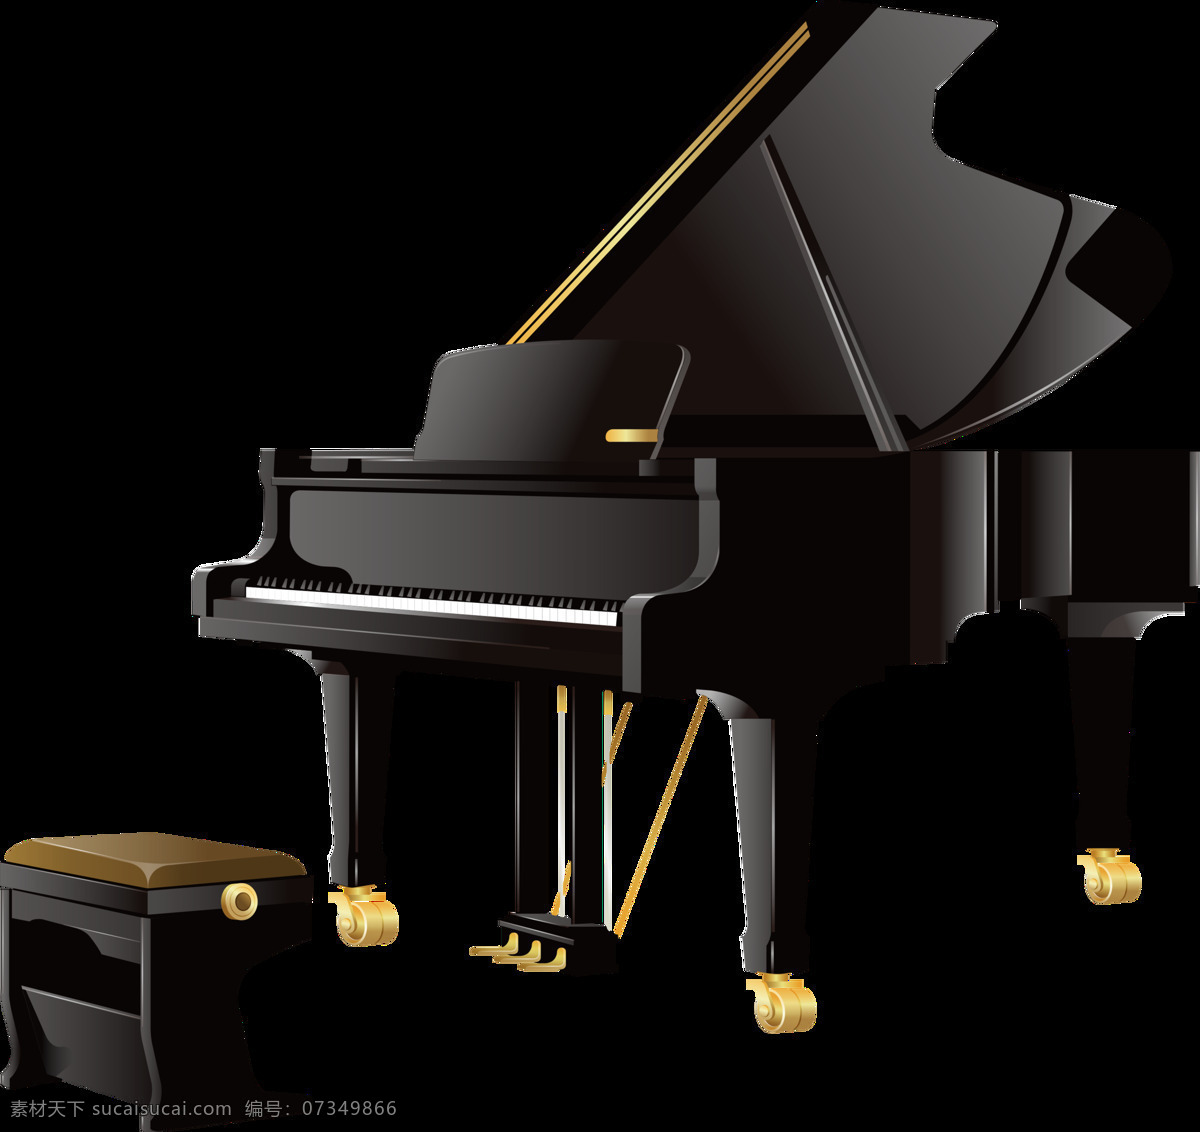 黑色 卡通 钢琴 元素 钢琴素材 钢琴音乐 钢琴元素 音乐 音乐背景 音乐素材 音乐图片 音乐元素